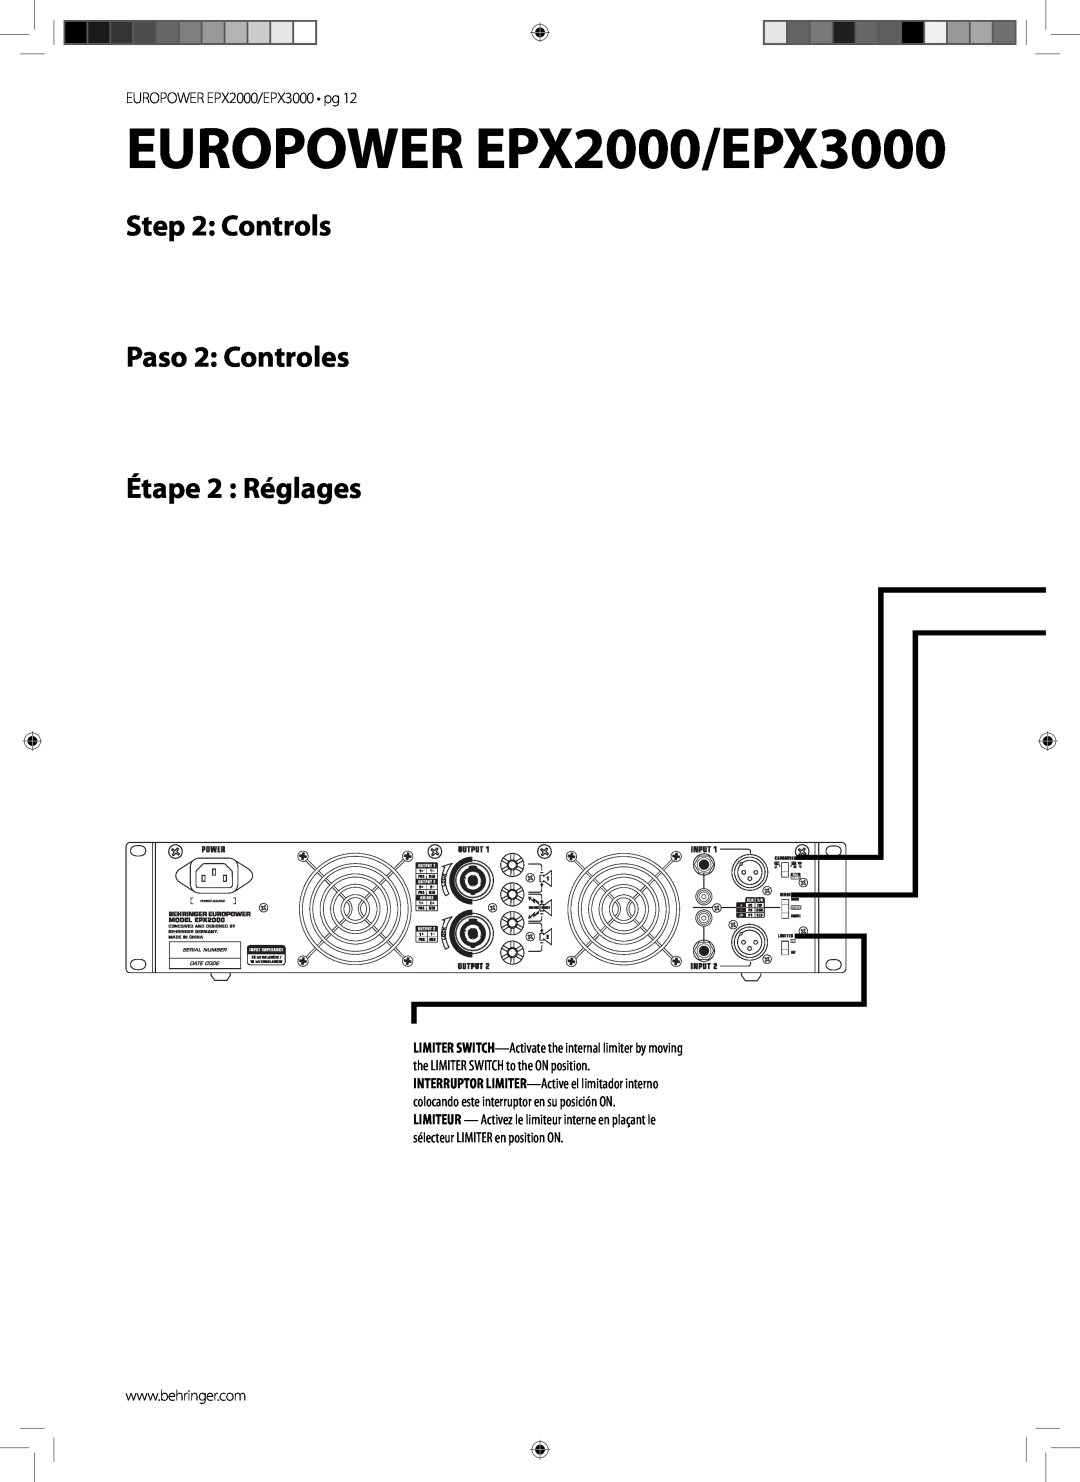 Behringer manual EUROPOWER EPX2000/EPX3000, Controls Paso 2 Controles, Étape 2 Réglages 